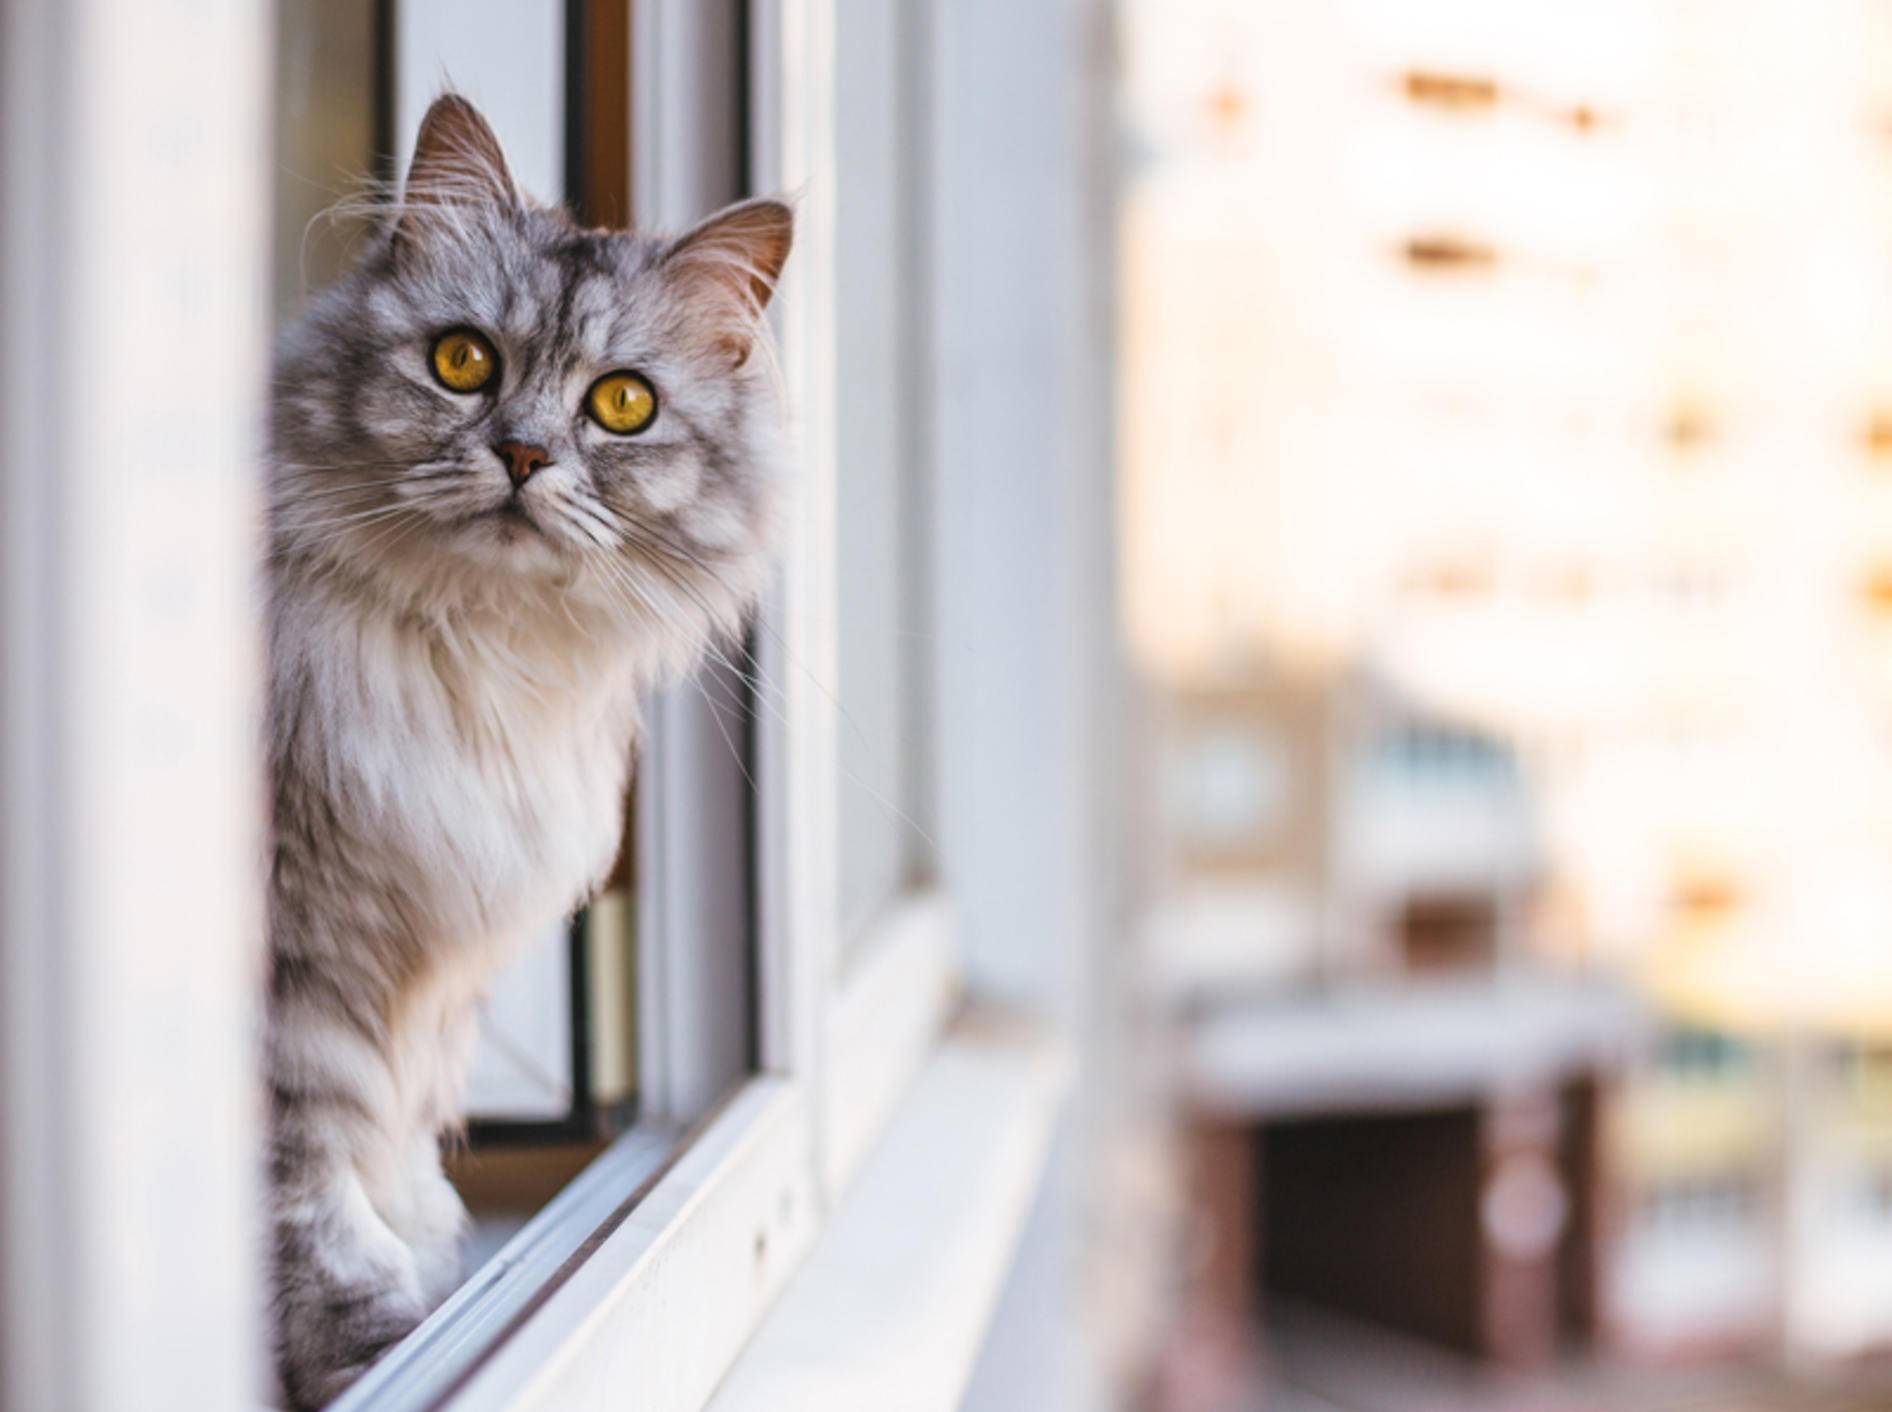 Ein Fenstersturz kann für Katzen mit schweren Verletzungen enden und sie sogar in Lebensgefahr bringen. Sichern Sie Ihre Fenster daher gut ab – Shutterstock / lkoimages